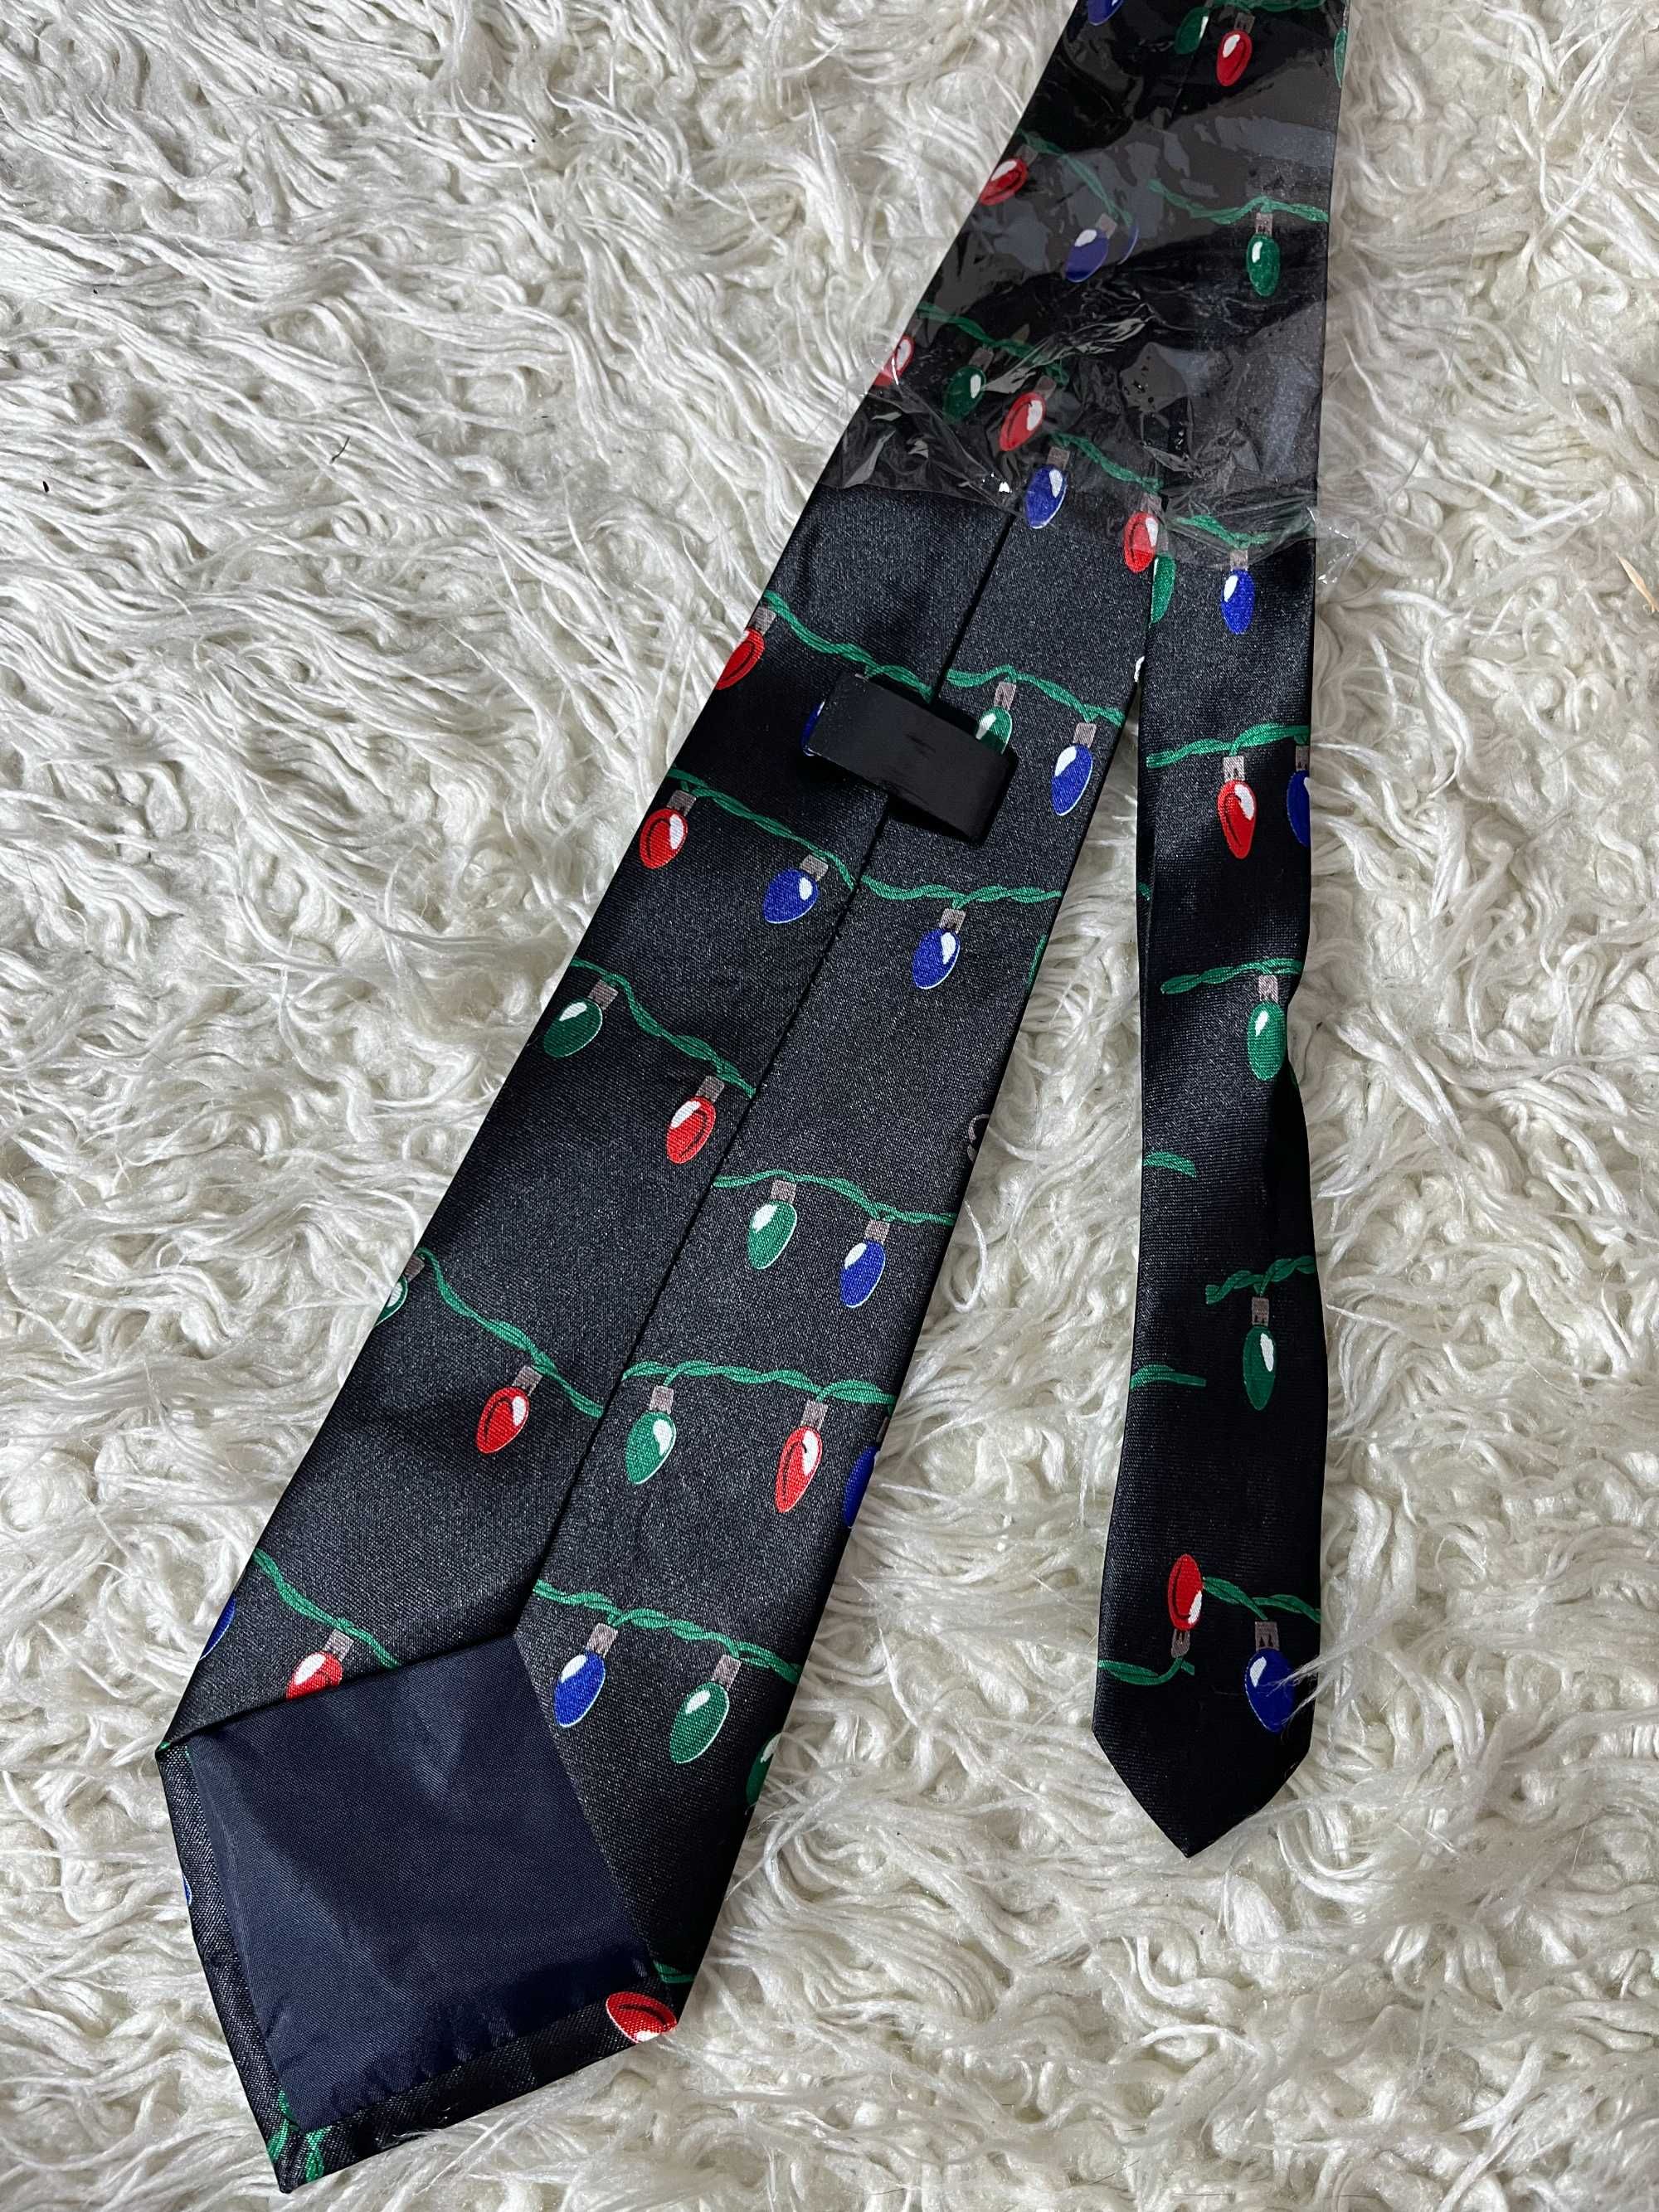 Świąteczny krawat